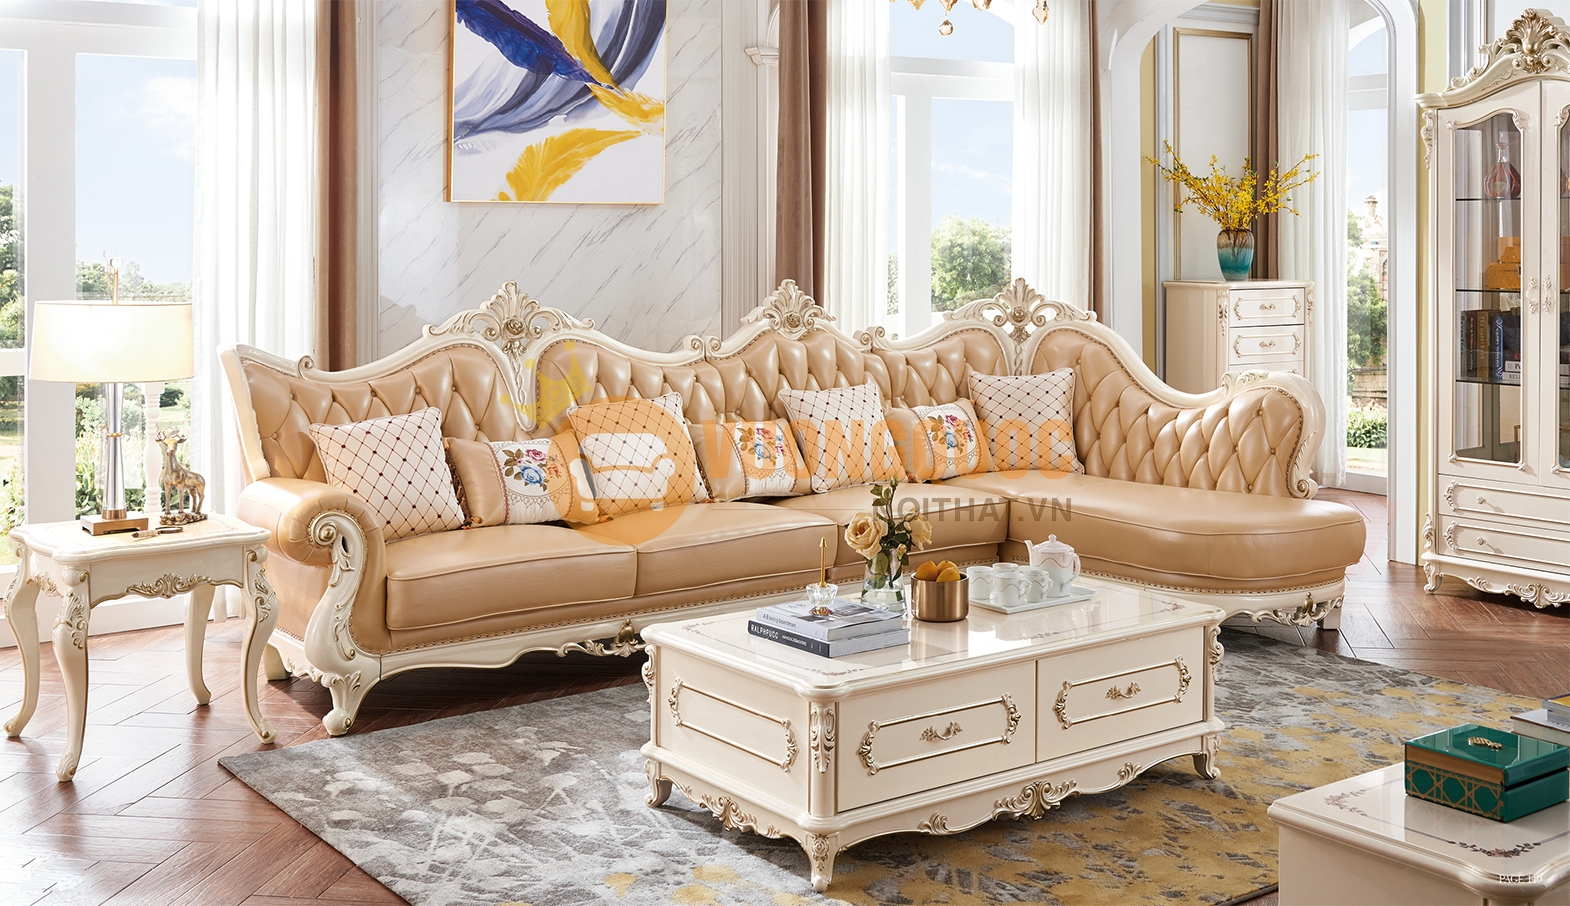 Bộ sofa góc tân cổ điển là lựa chọn hoàn hảo cho ngôi nhà của bạn nếu bạn đang tìm kiếm một phong cách trang trí mang tính cổ điển. Hãy đến thăm showroom của chúng tôi để khám phá những mẫu bộ sofa góc tân cổ điển đang thu hút sự quan tâm của rất nhiều người.